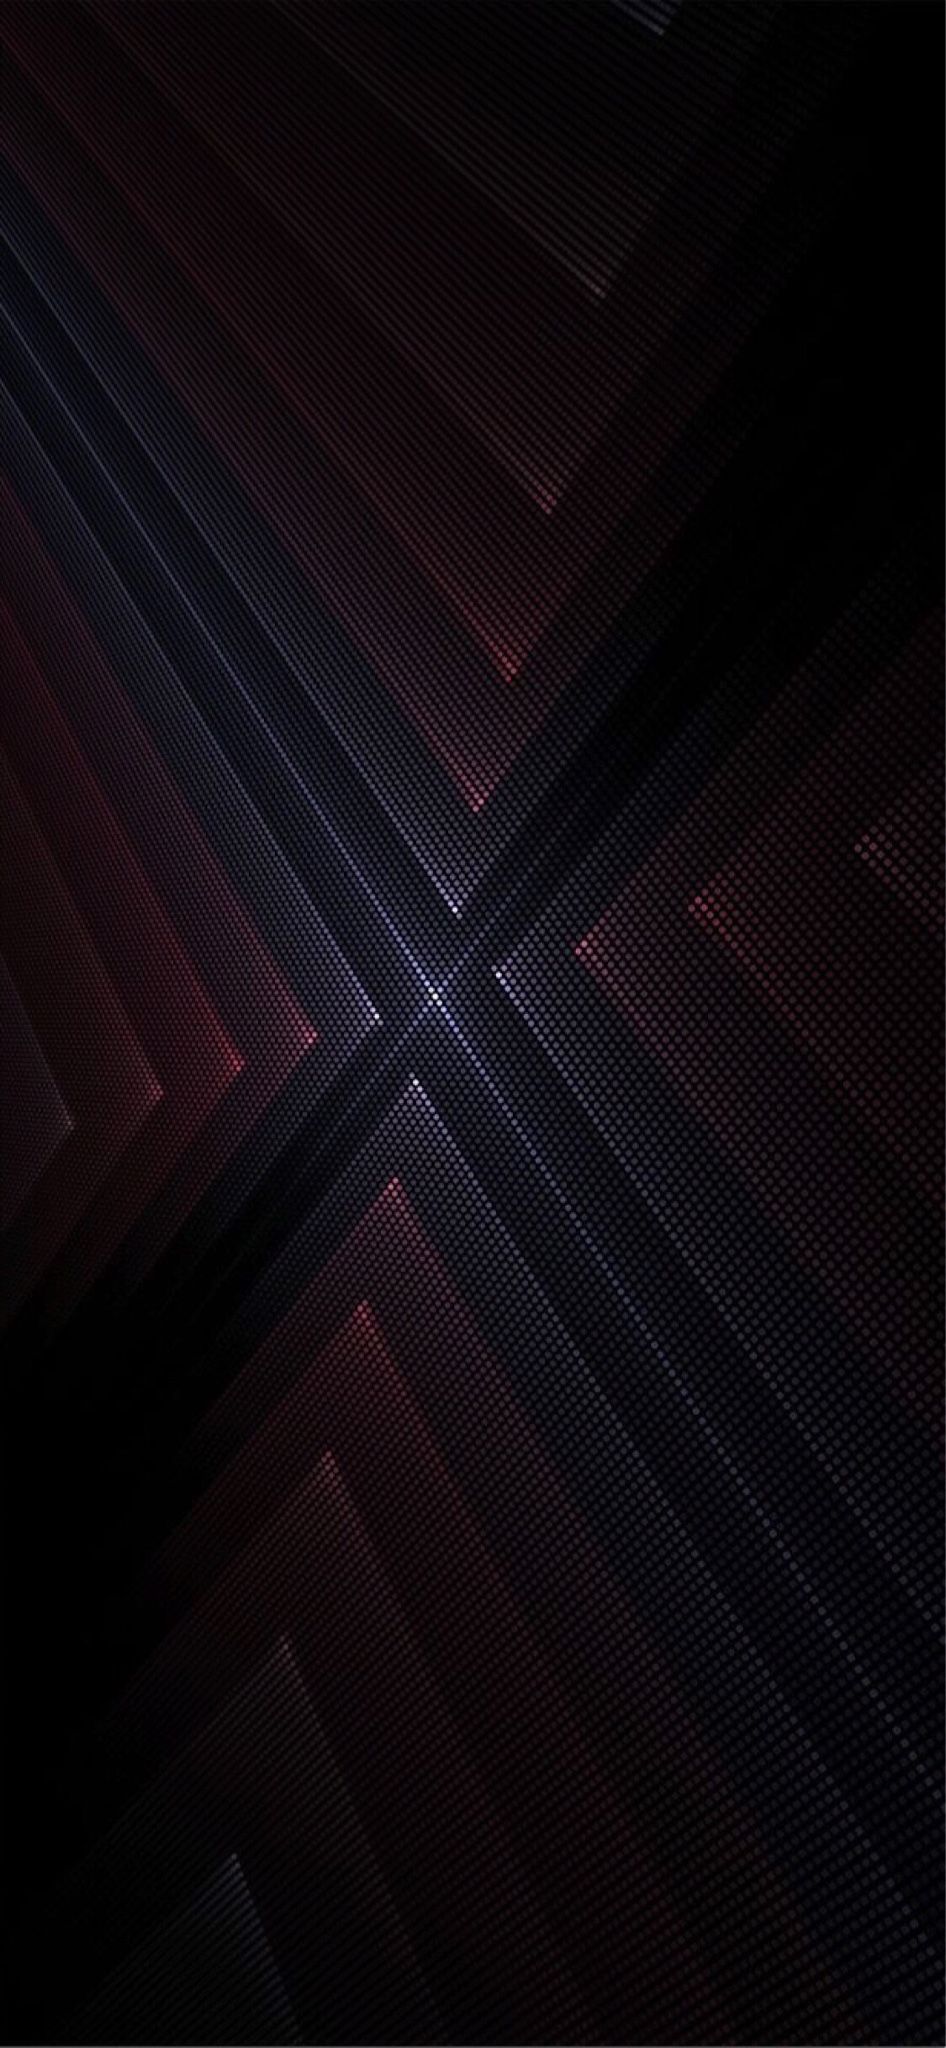 iPhone Wallpaper. Black, Red, Brown, Maroon, Line, Purple